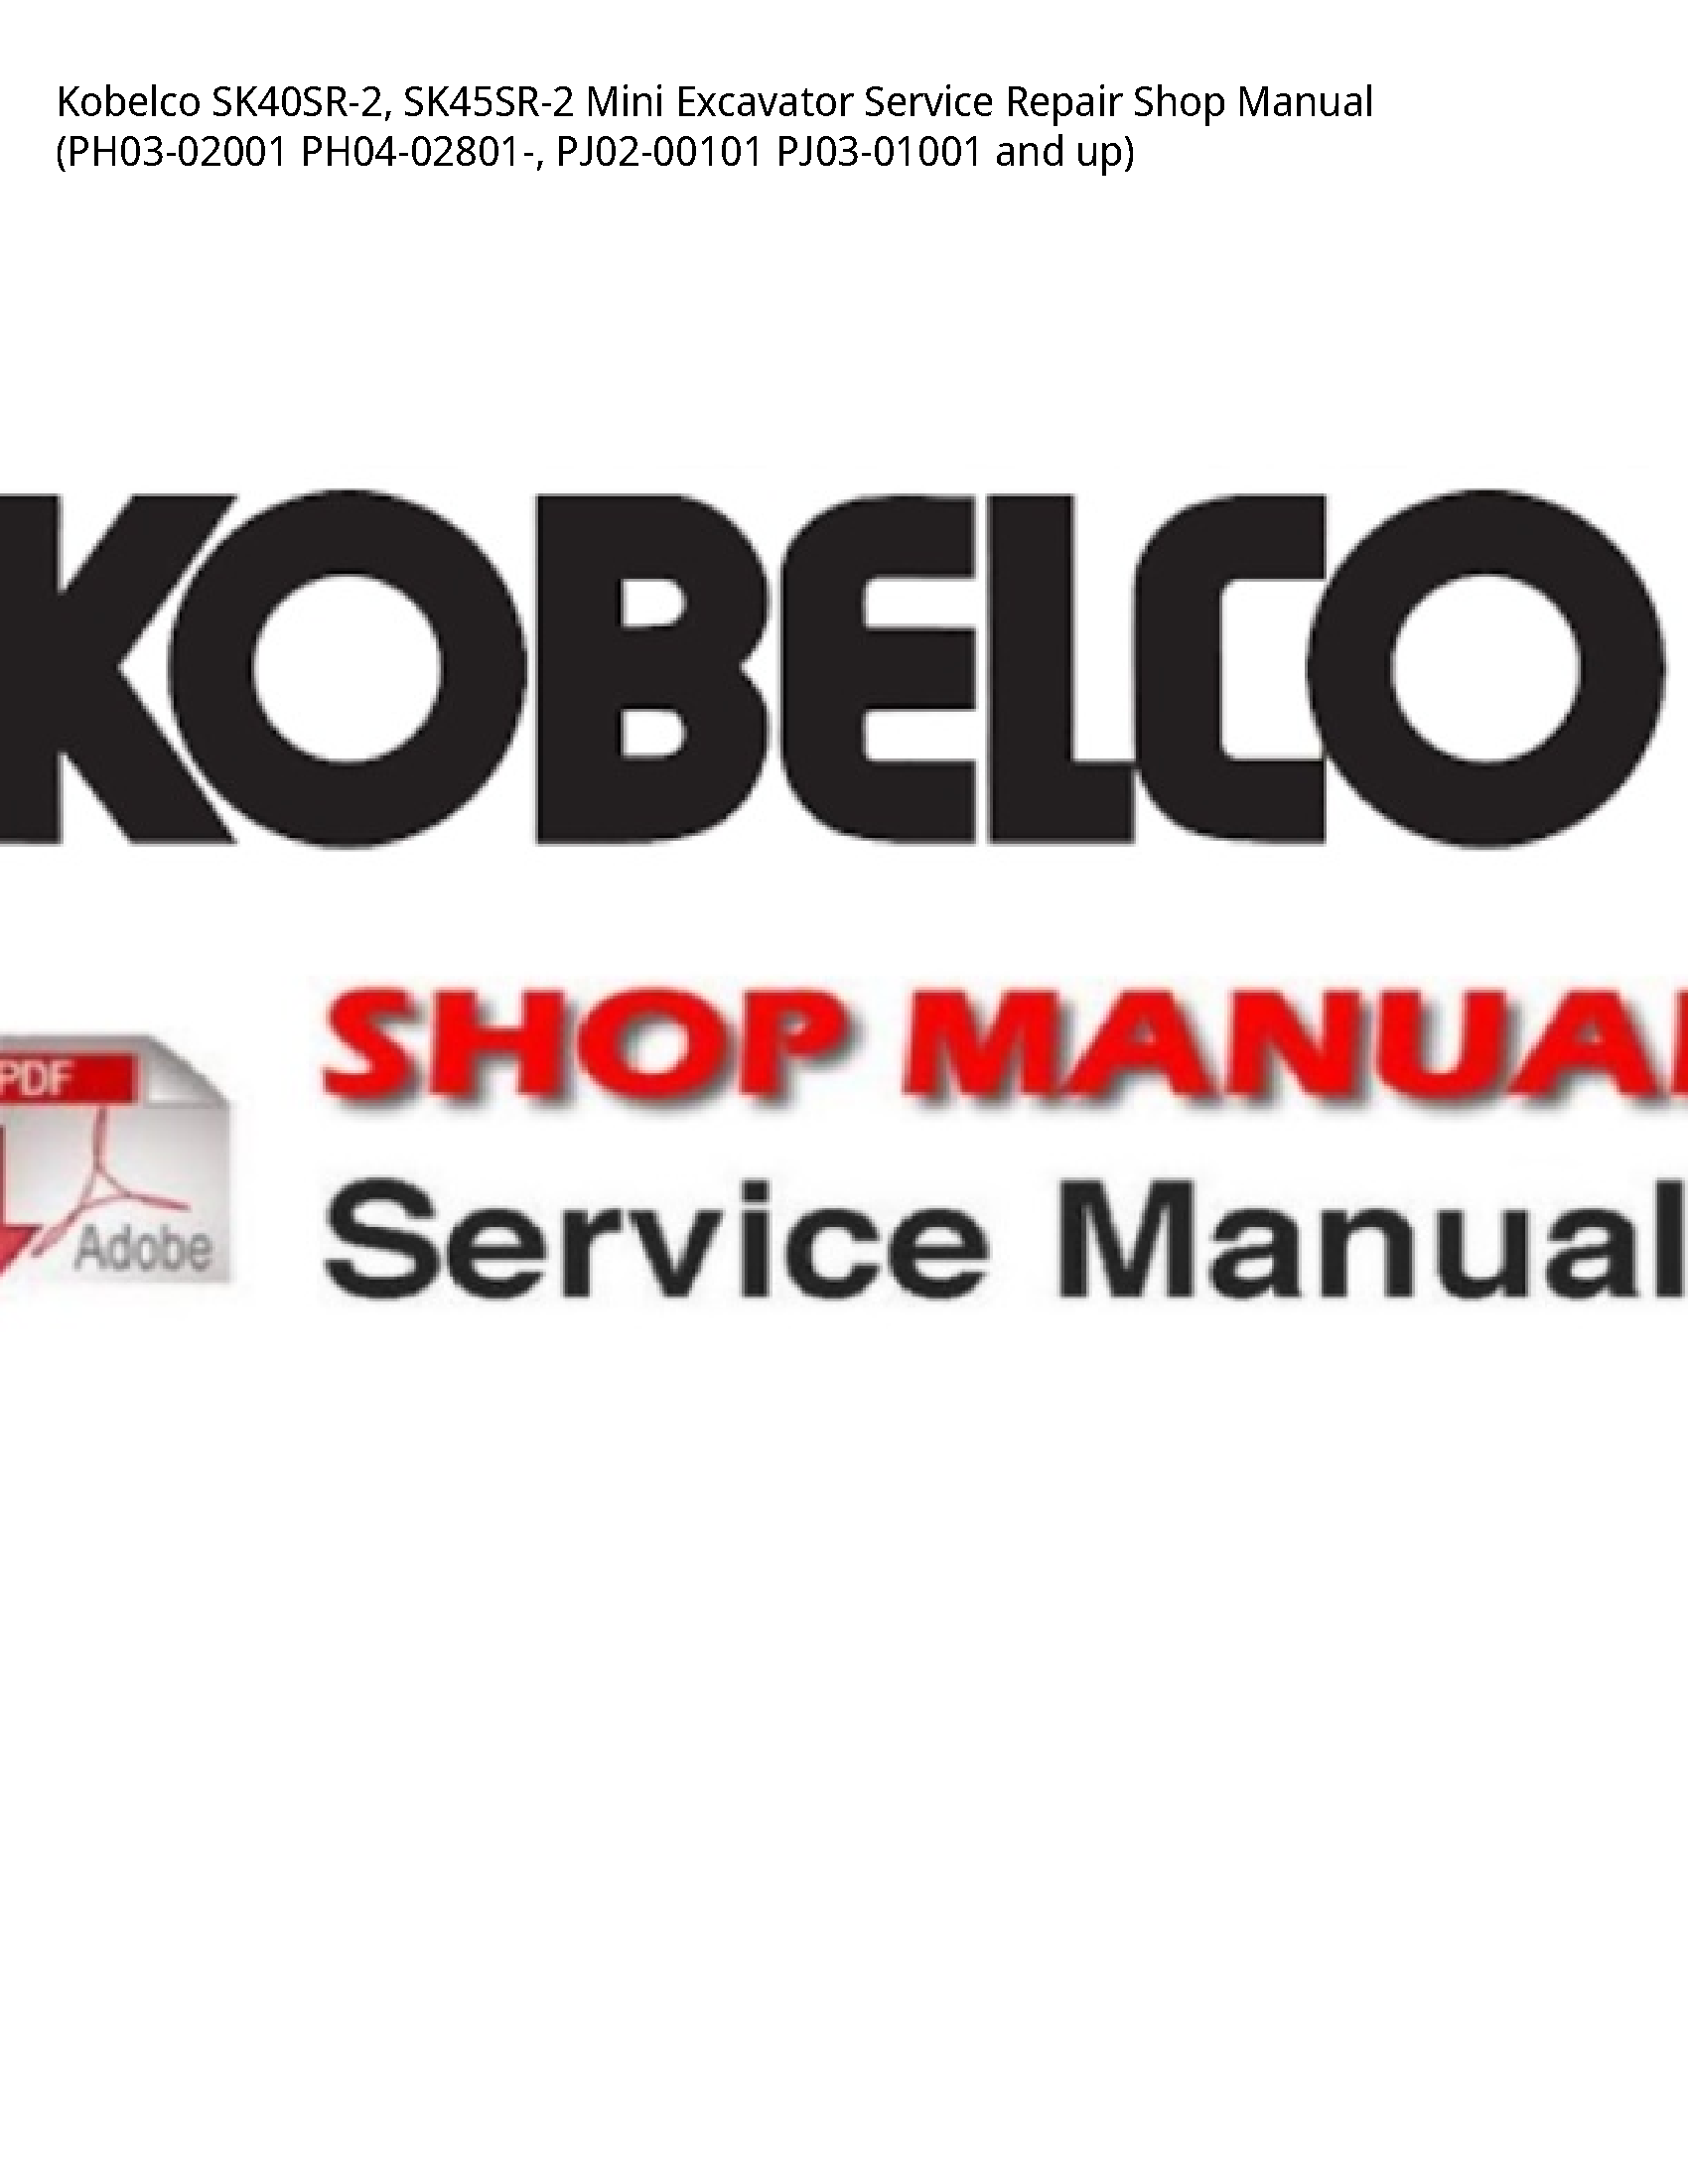 Kobelco SK40SR-2 Mini Excavator manual